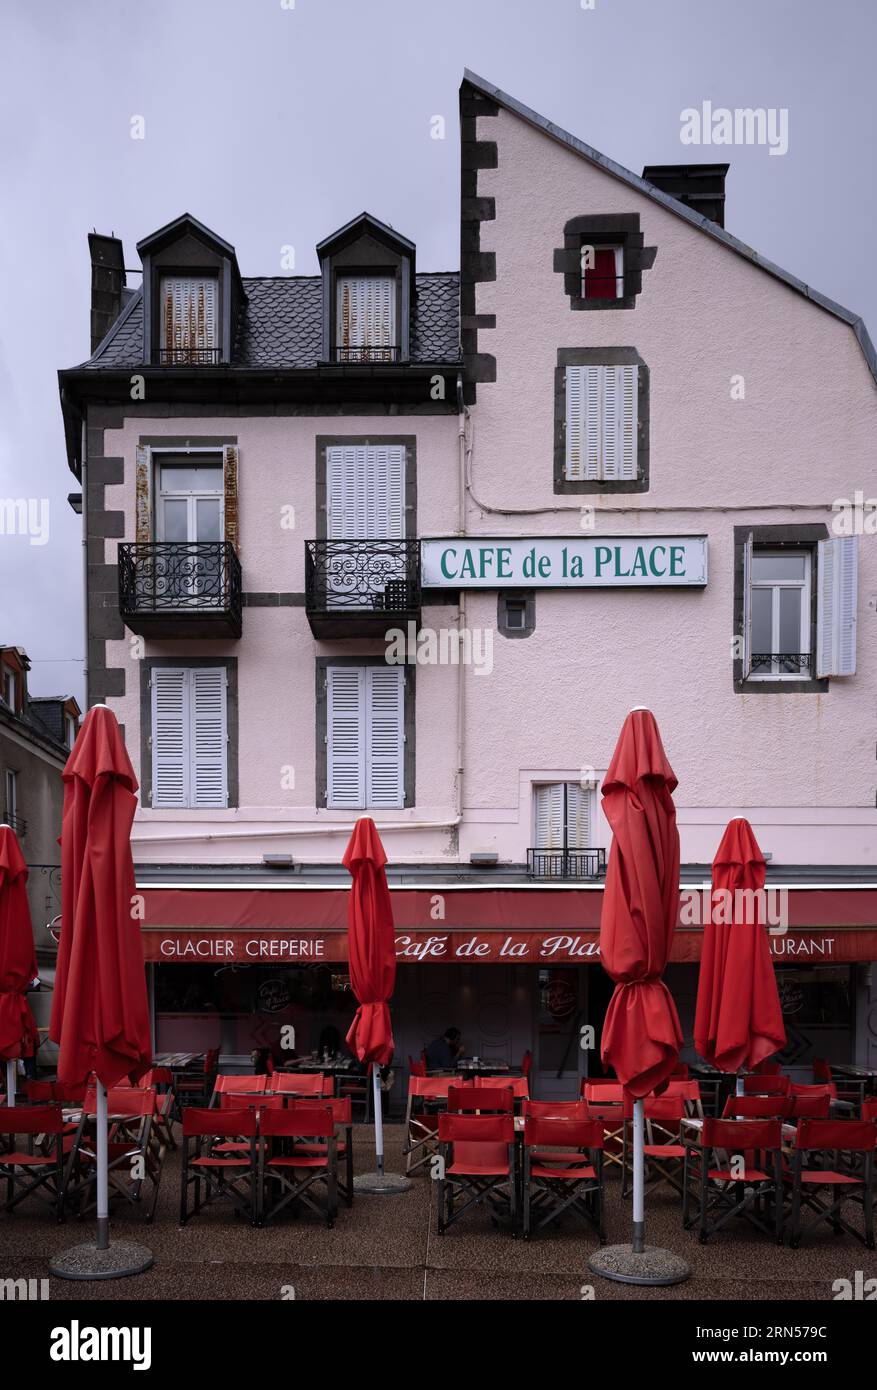 Café de la Place sotto la pioggia, piovoso, ombrelloni chiusi, rosso, Mont-Dore, dipartimento Puy-de-Dome, regione Auvergne-Rhône-Alpes, Francia, Europa Foto Stock